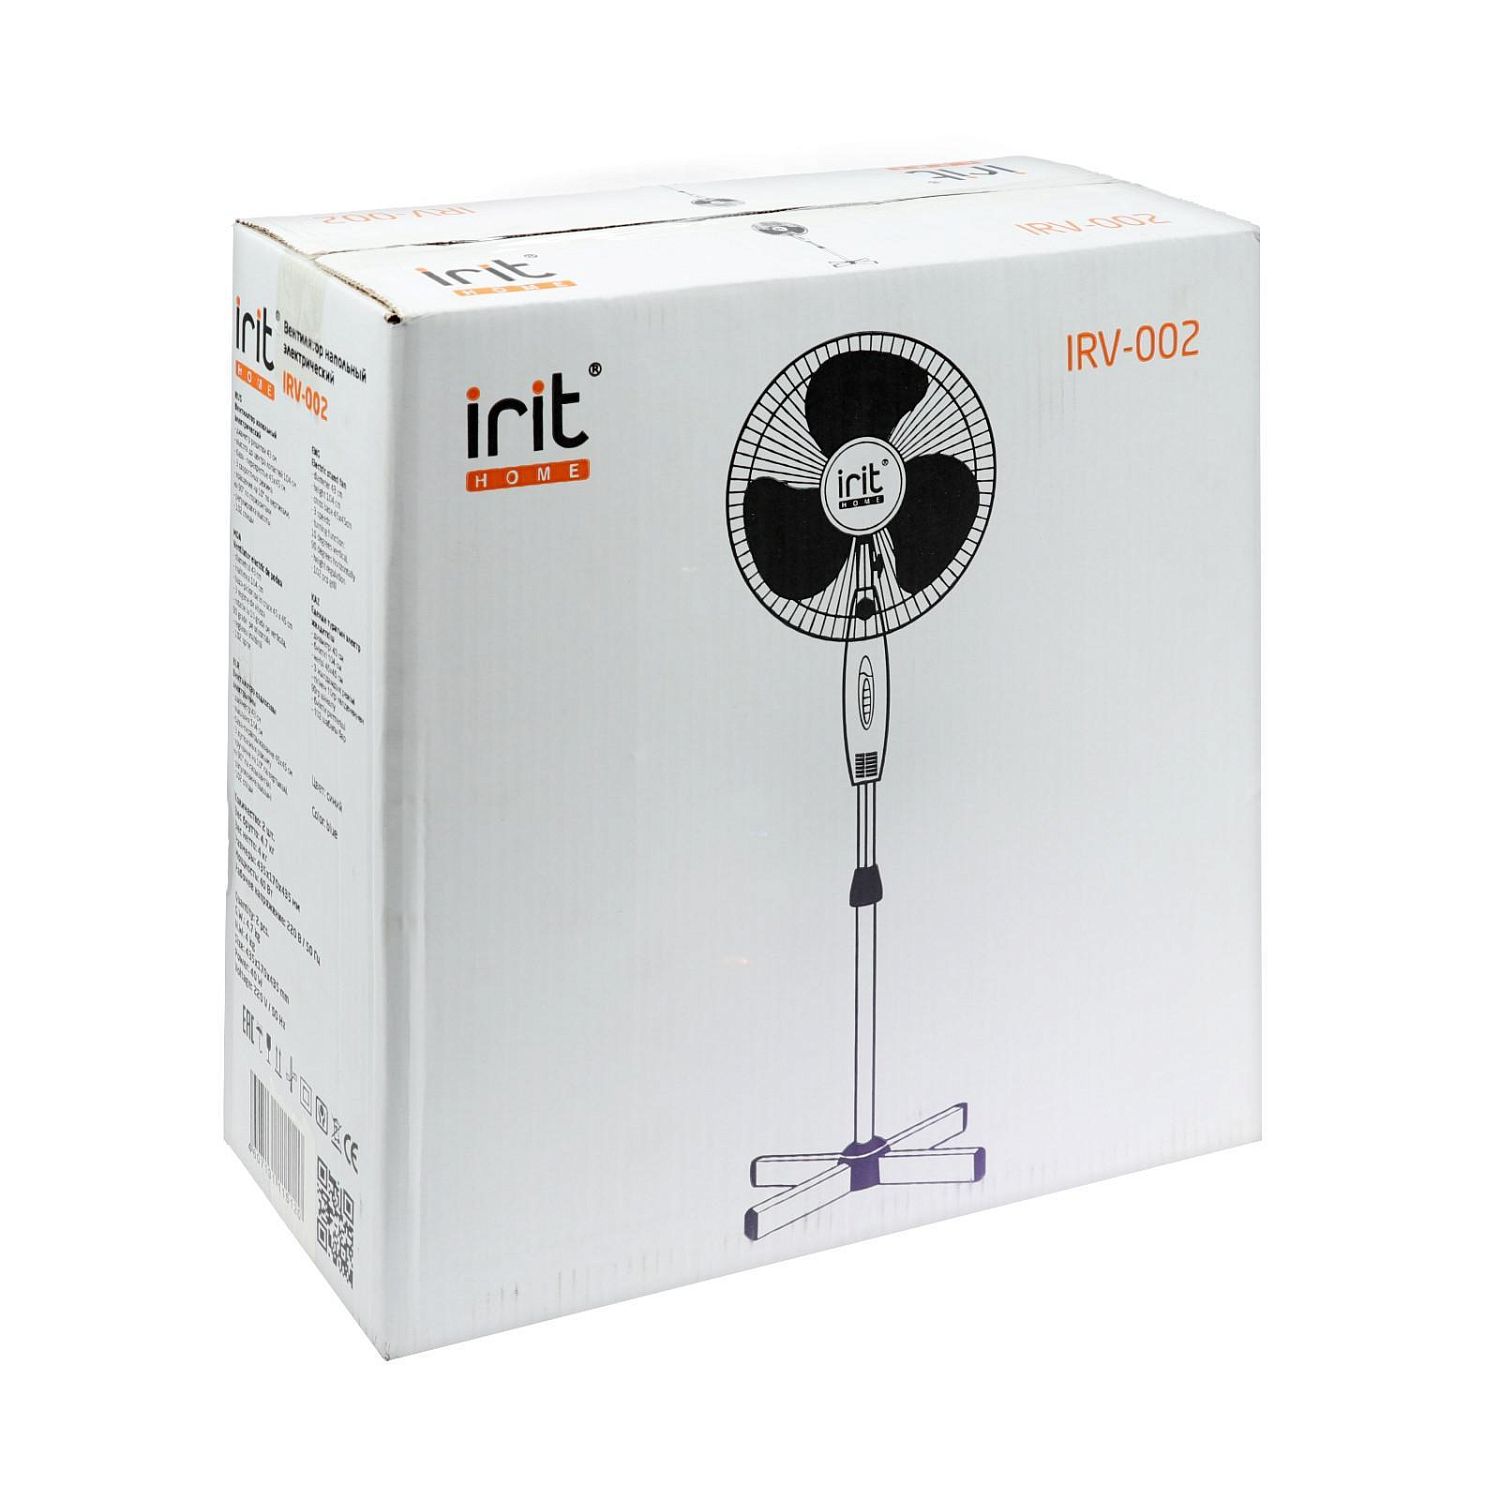 Вентилятор IRV-002 напольный, 40 Вт, 3 режима IRIT  834884